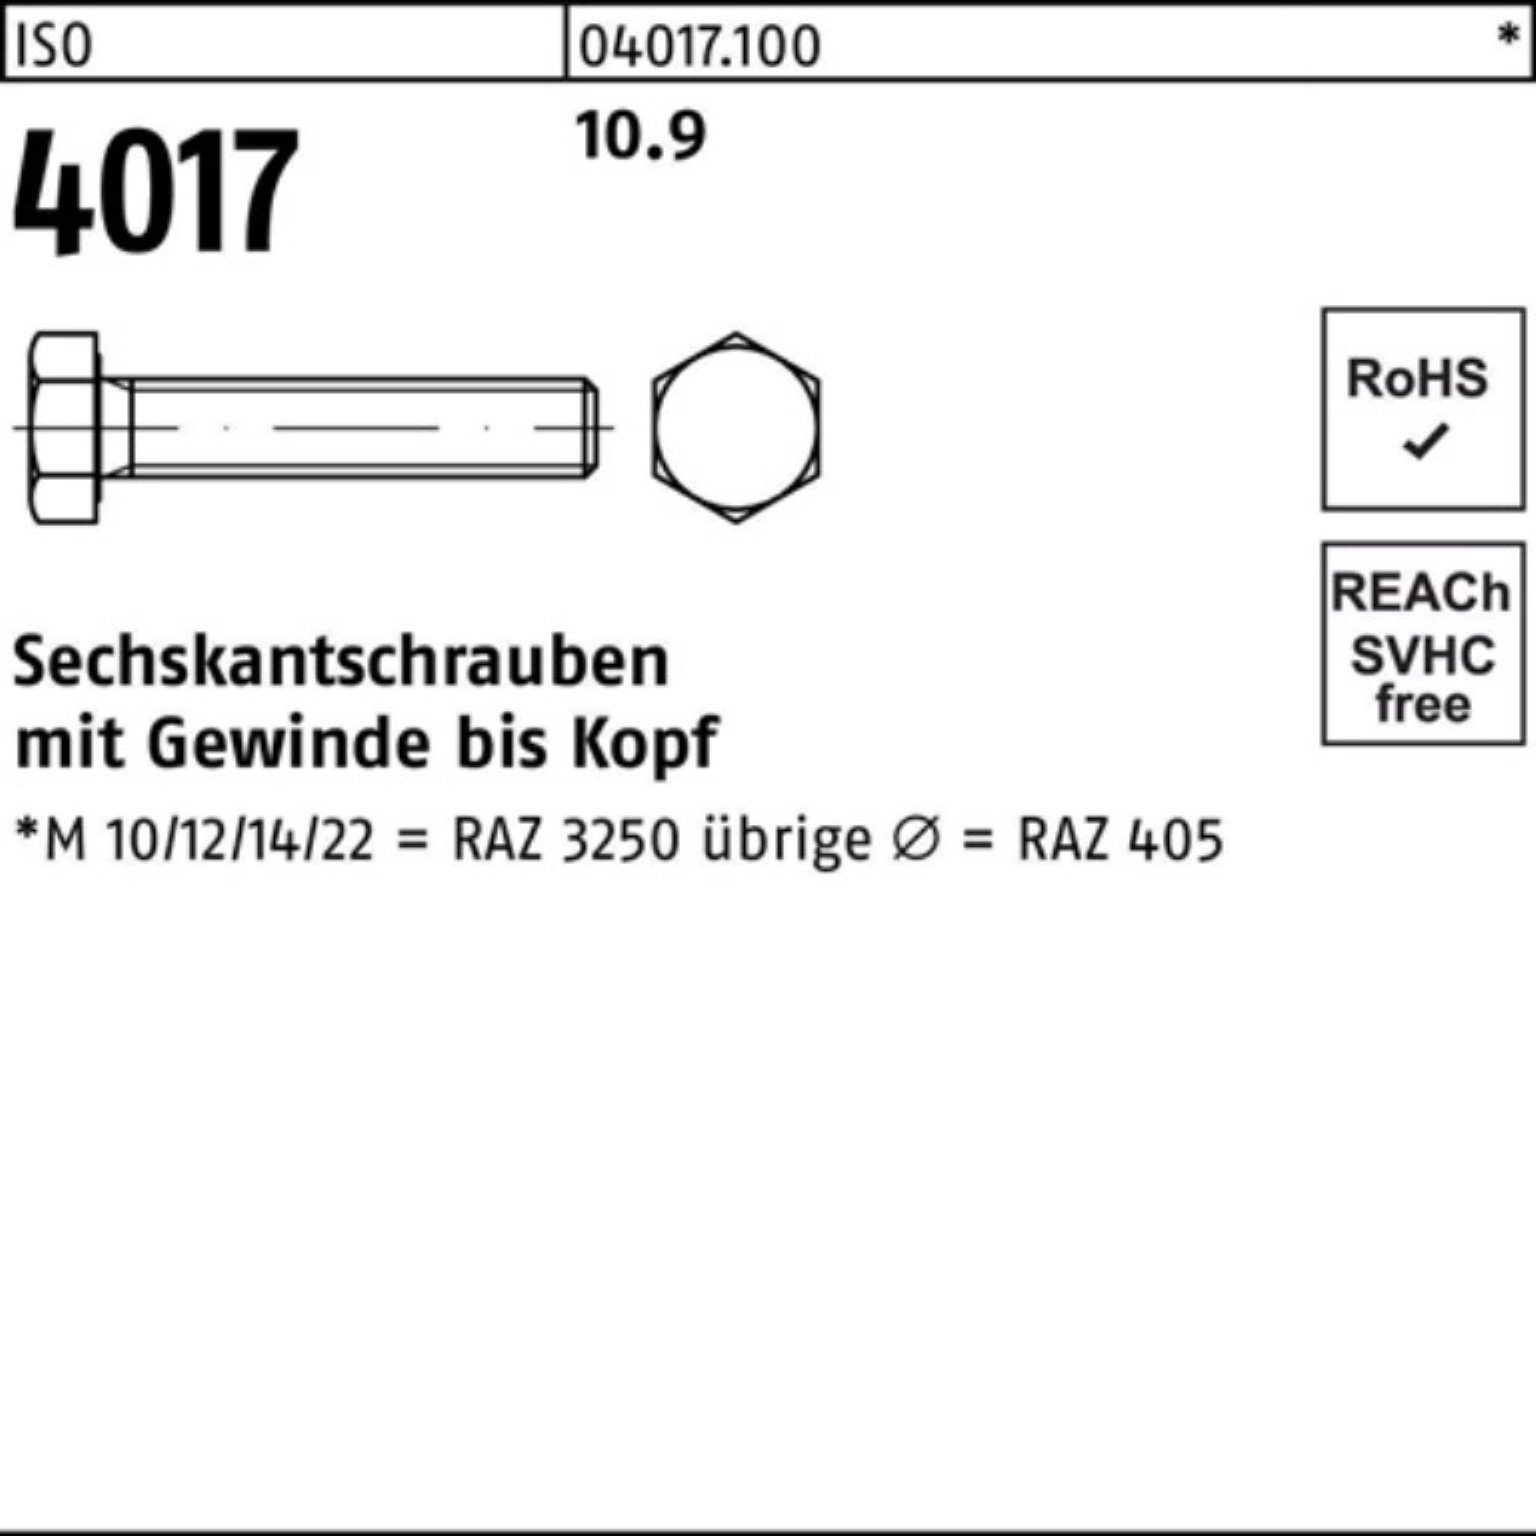 VG 100er Stück Pack 1 ISO Sechskantschraube M30x 10.9 Bufab Sechskantschraube 4017 75 ISO 401